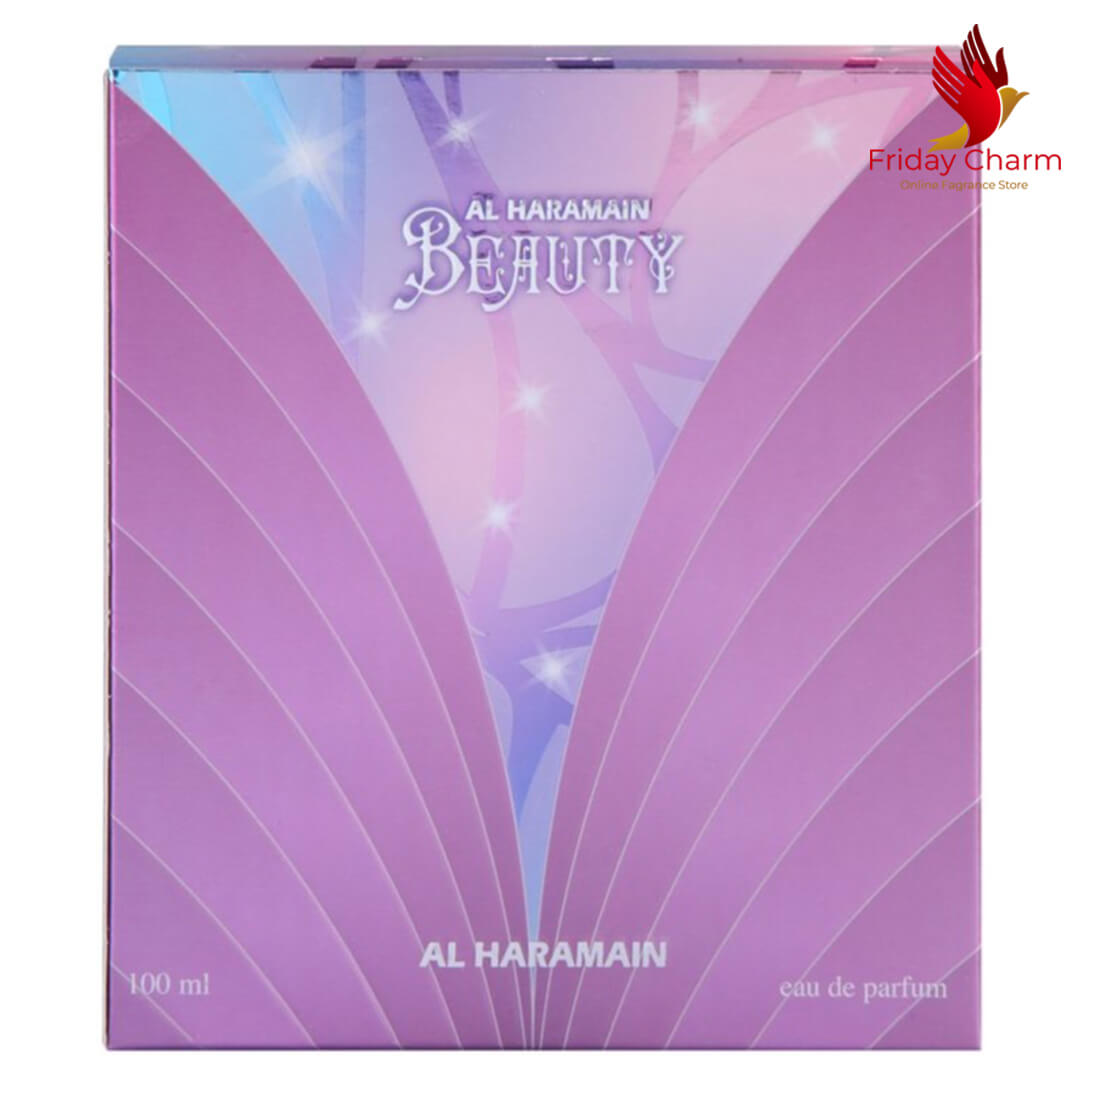 Al Haramain Beauty Spray for Women - 100ml